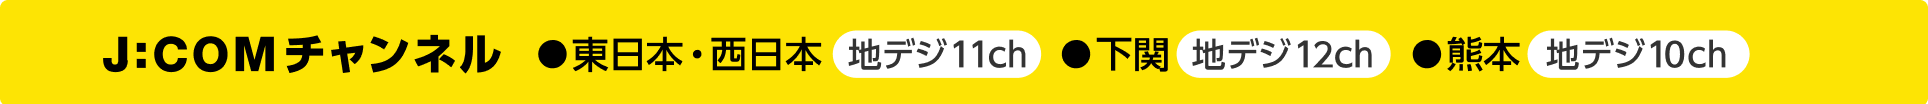 J:COMチャンネル 東日本西日本:地デジ11ch、下関:地デジ12ch、熊本:地デジ10ch